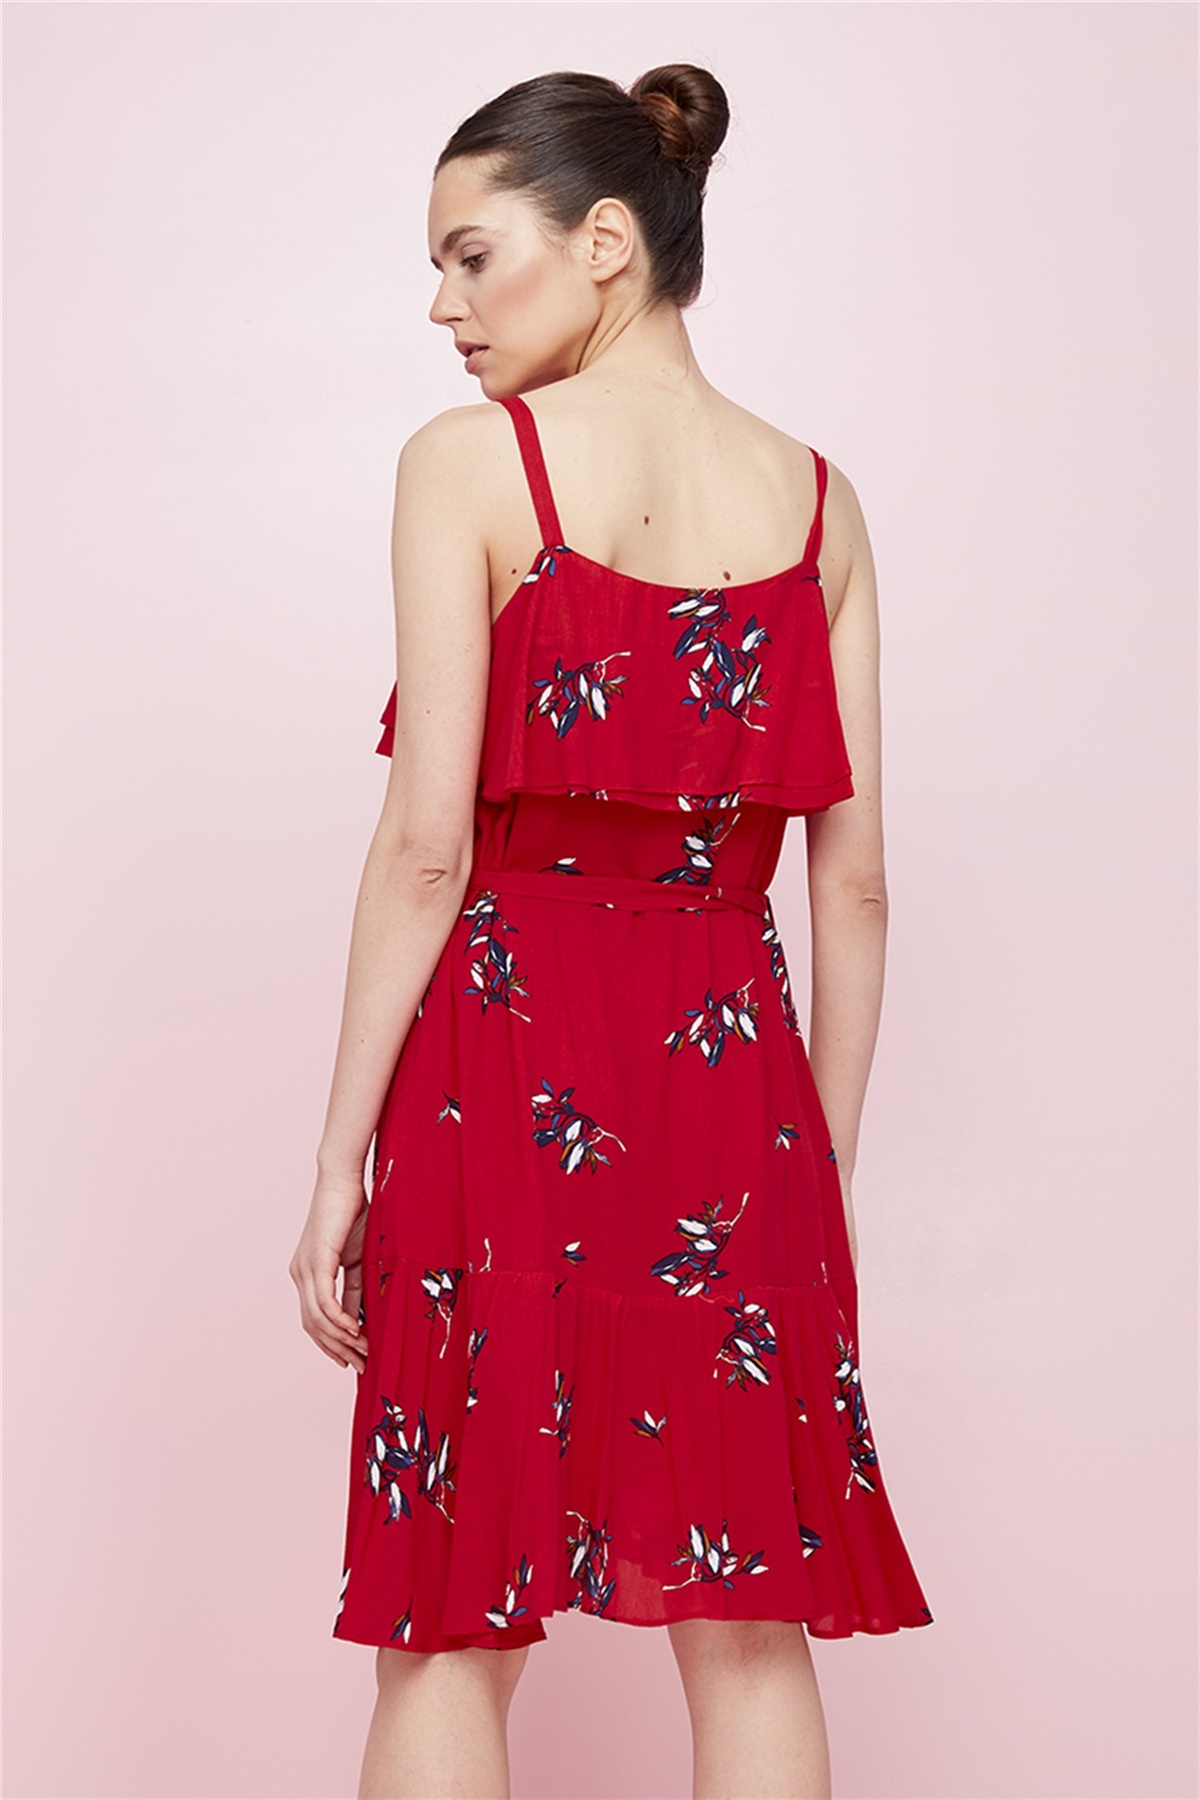 Elbise, Ön Yaka Ve Etek Altı Volanlı Parçalı, Askılı, Belden Kuşaklı Kırmızı  Çiçekli